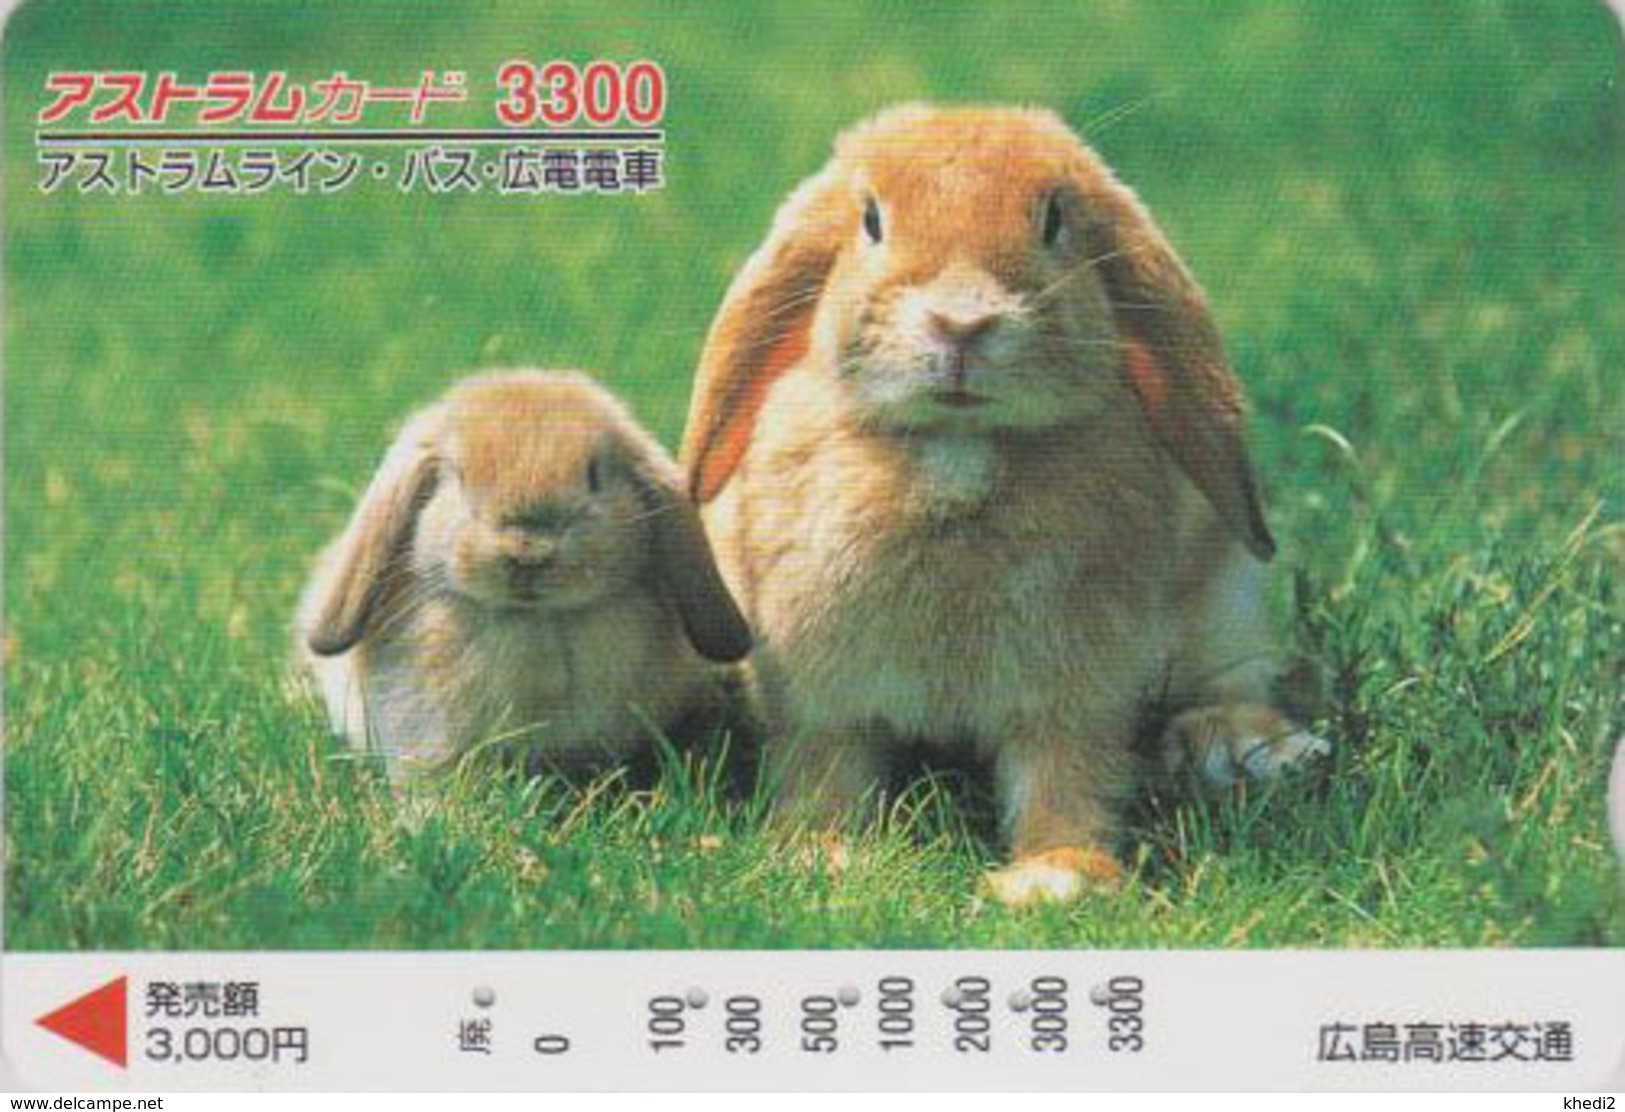 Carte Japon - ANIMAL - LAPIN & Bébé Lapereau 3300 - RABBIT Japan Prepaid Card - KANINCHEN CONIGLIO - FR BE 263 - Conejos